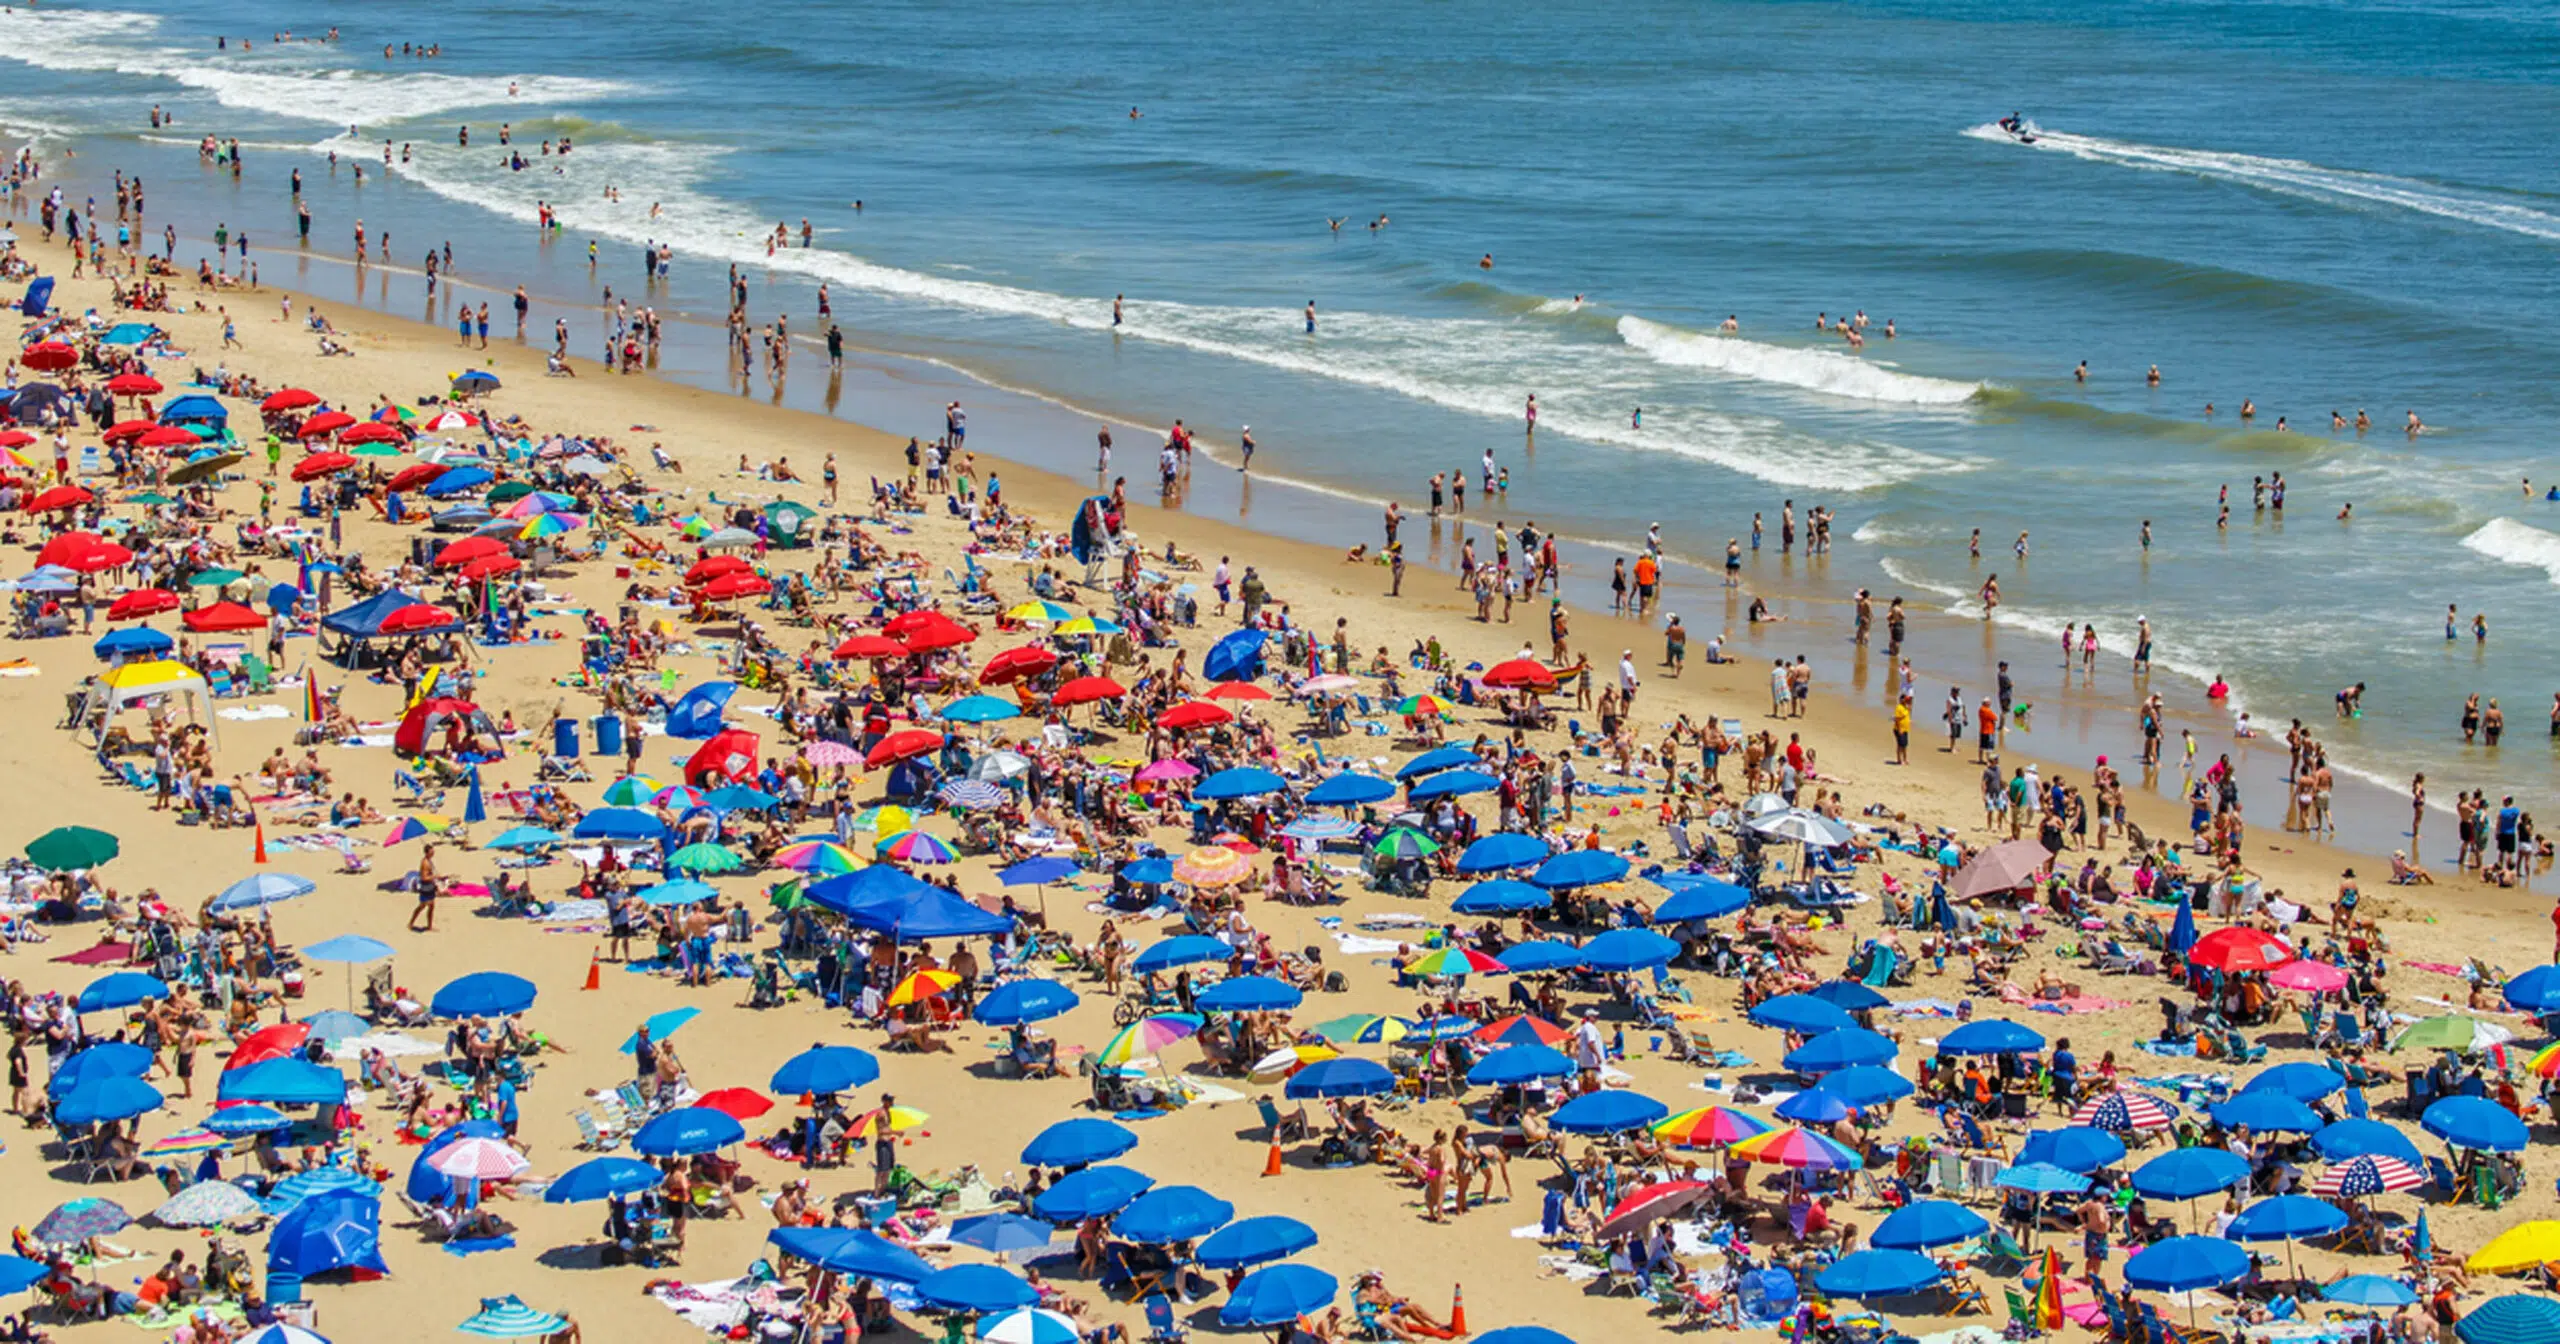 Crowded California beach during tourist season